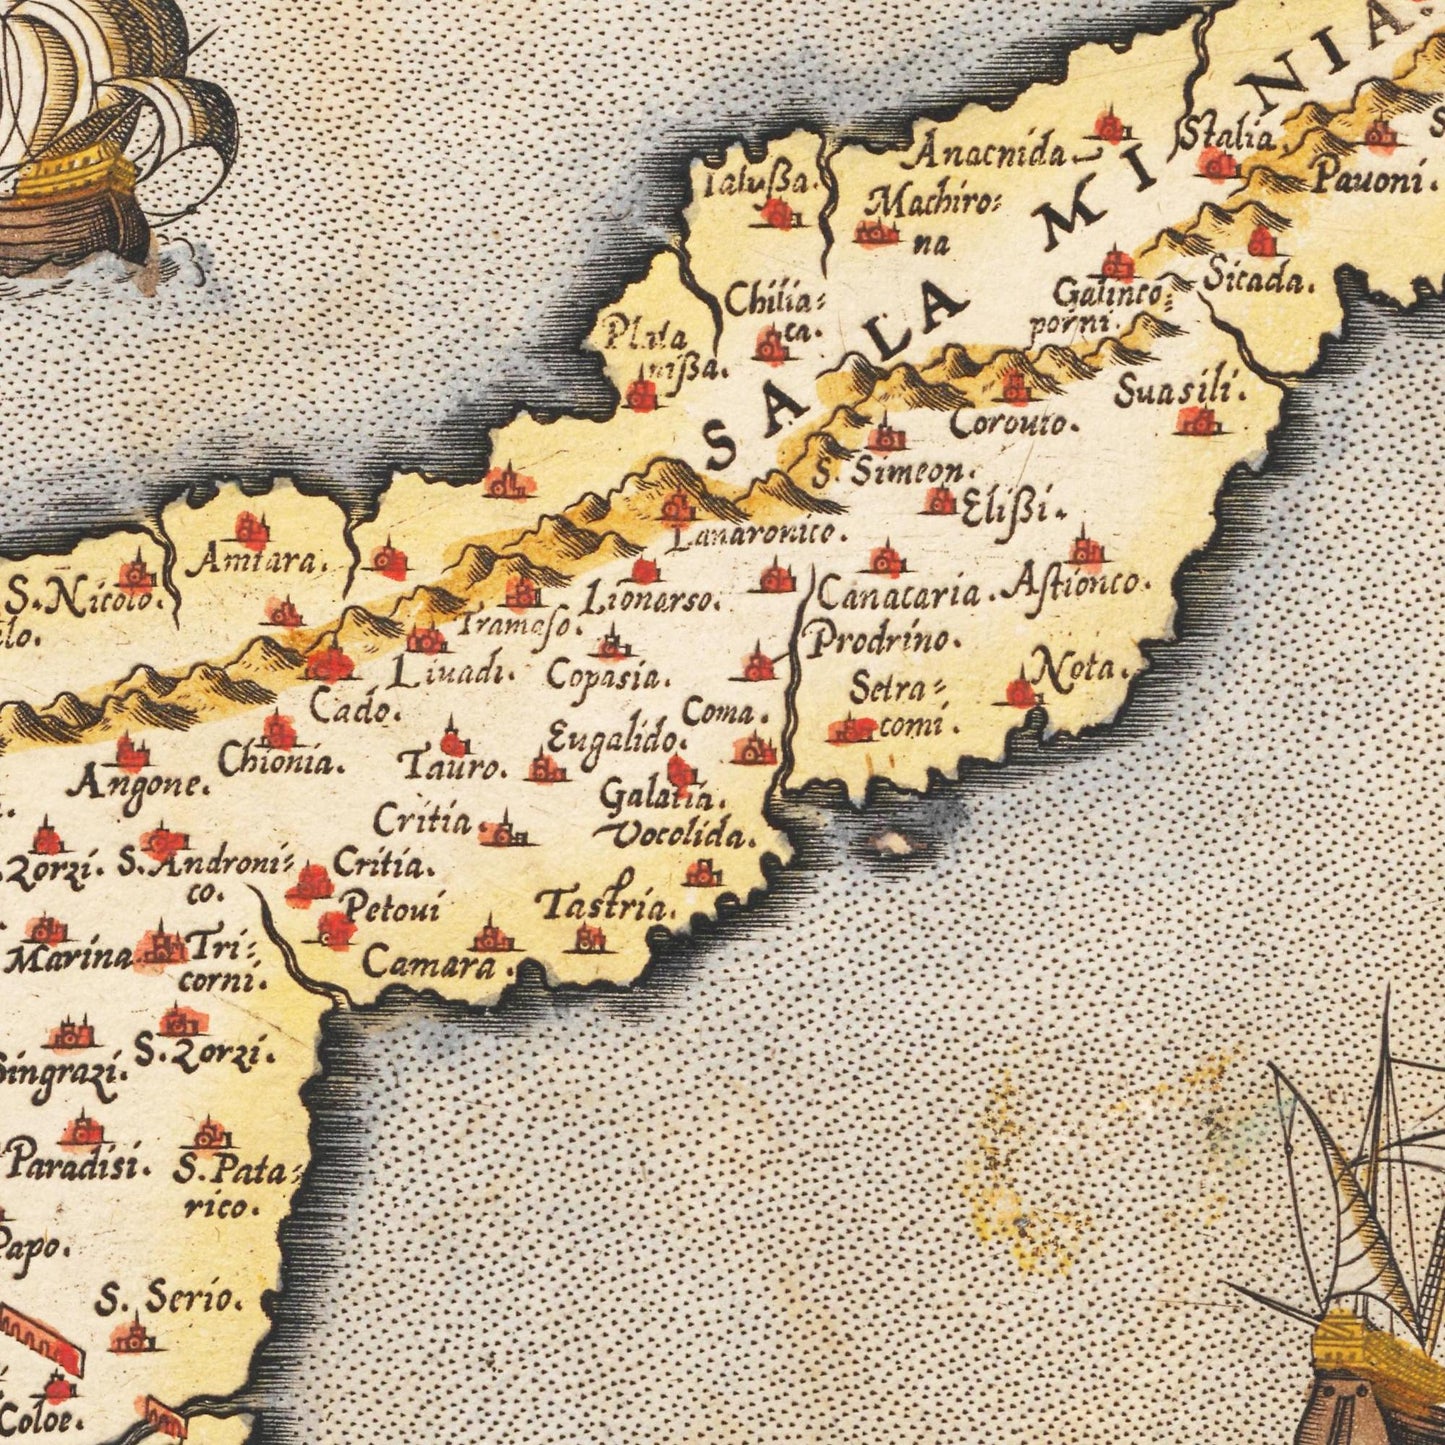 Historische Landkarte Zypern um 1609